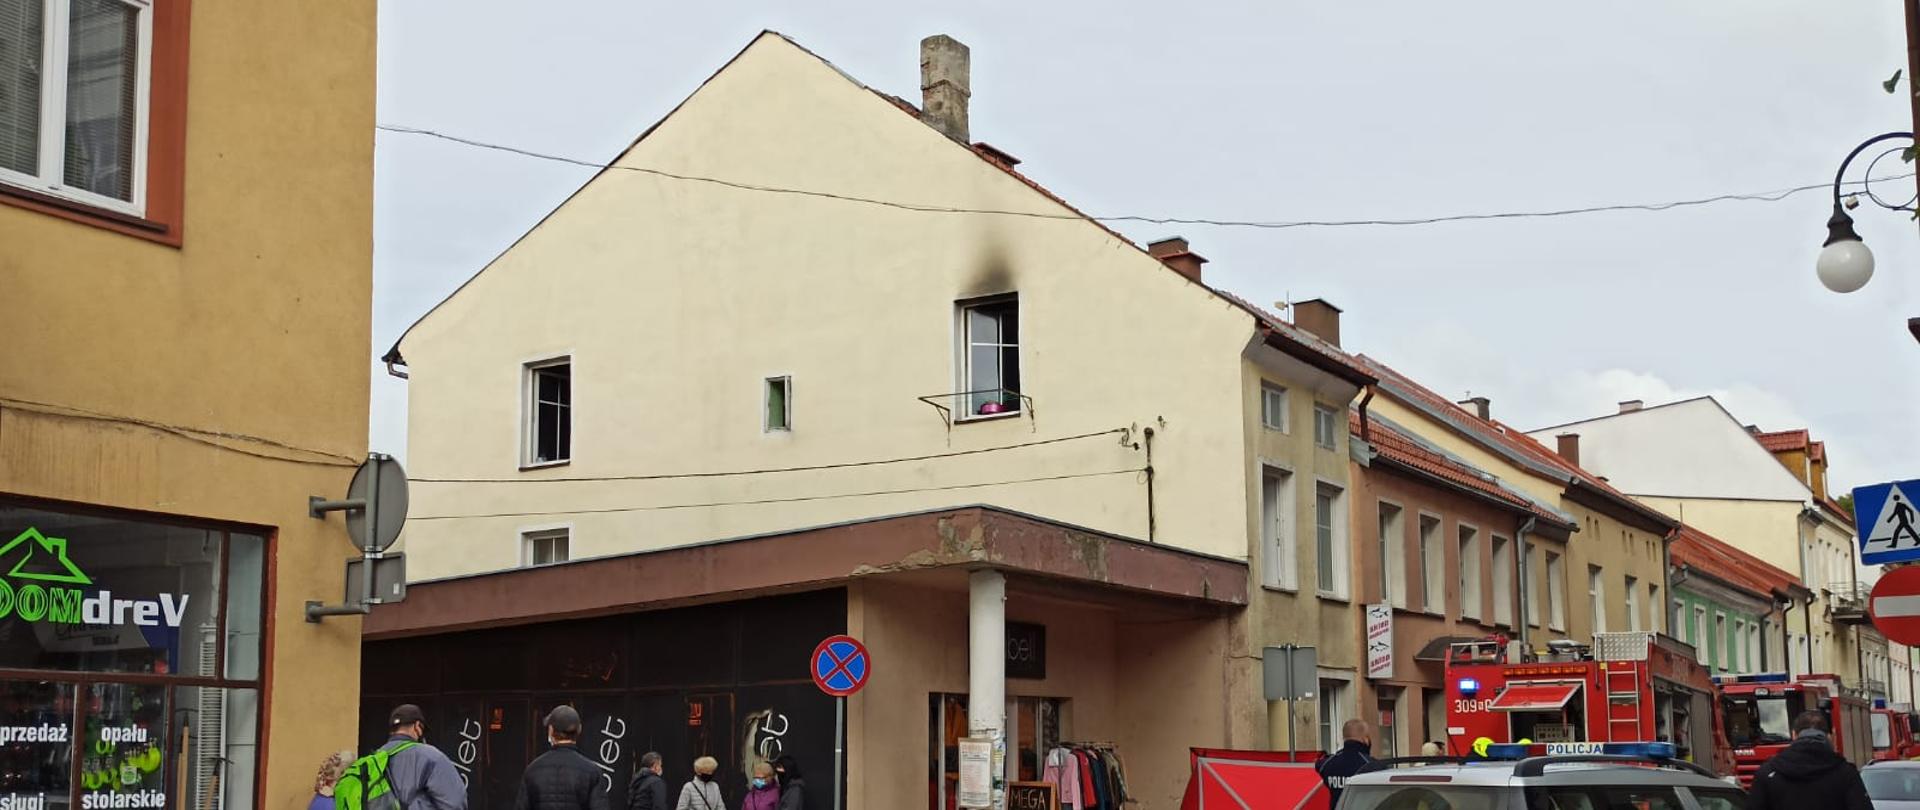 Zdjęcie ukazuje budynek w którym doszło do pożaru mieszkania w miejscowości Barczewo